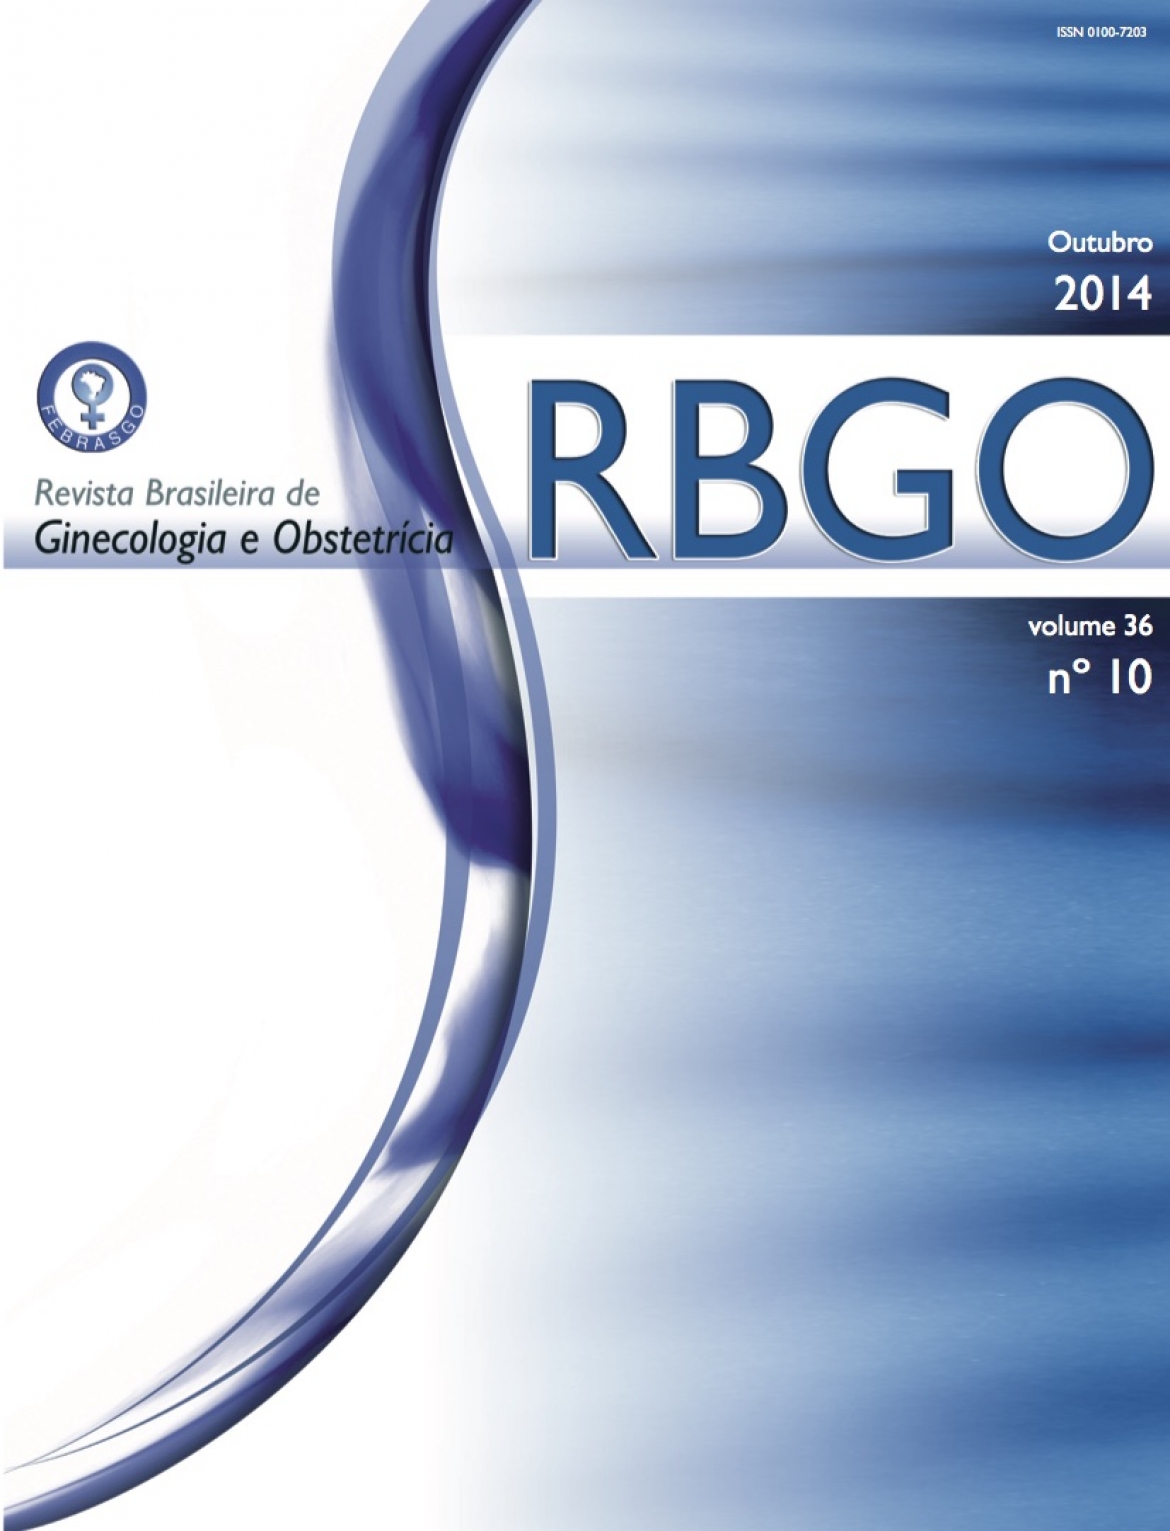 Revista Brasileira de Ginecologia e Obstetrícia – 2014 / Vol. 36 n°10